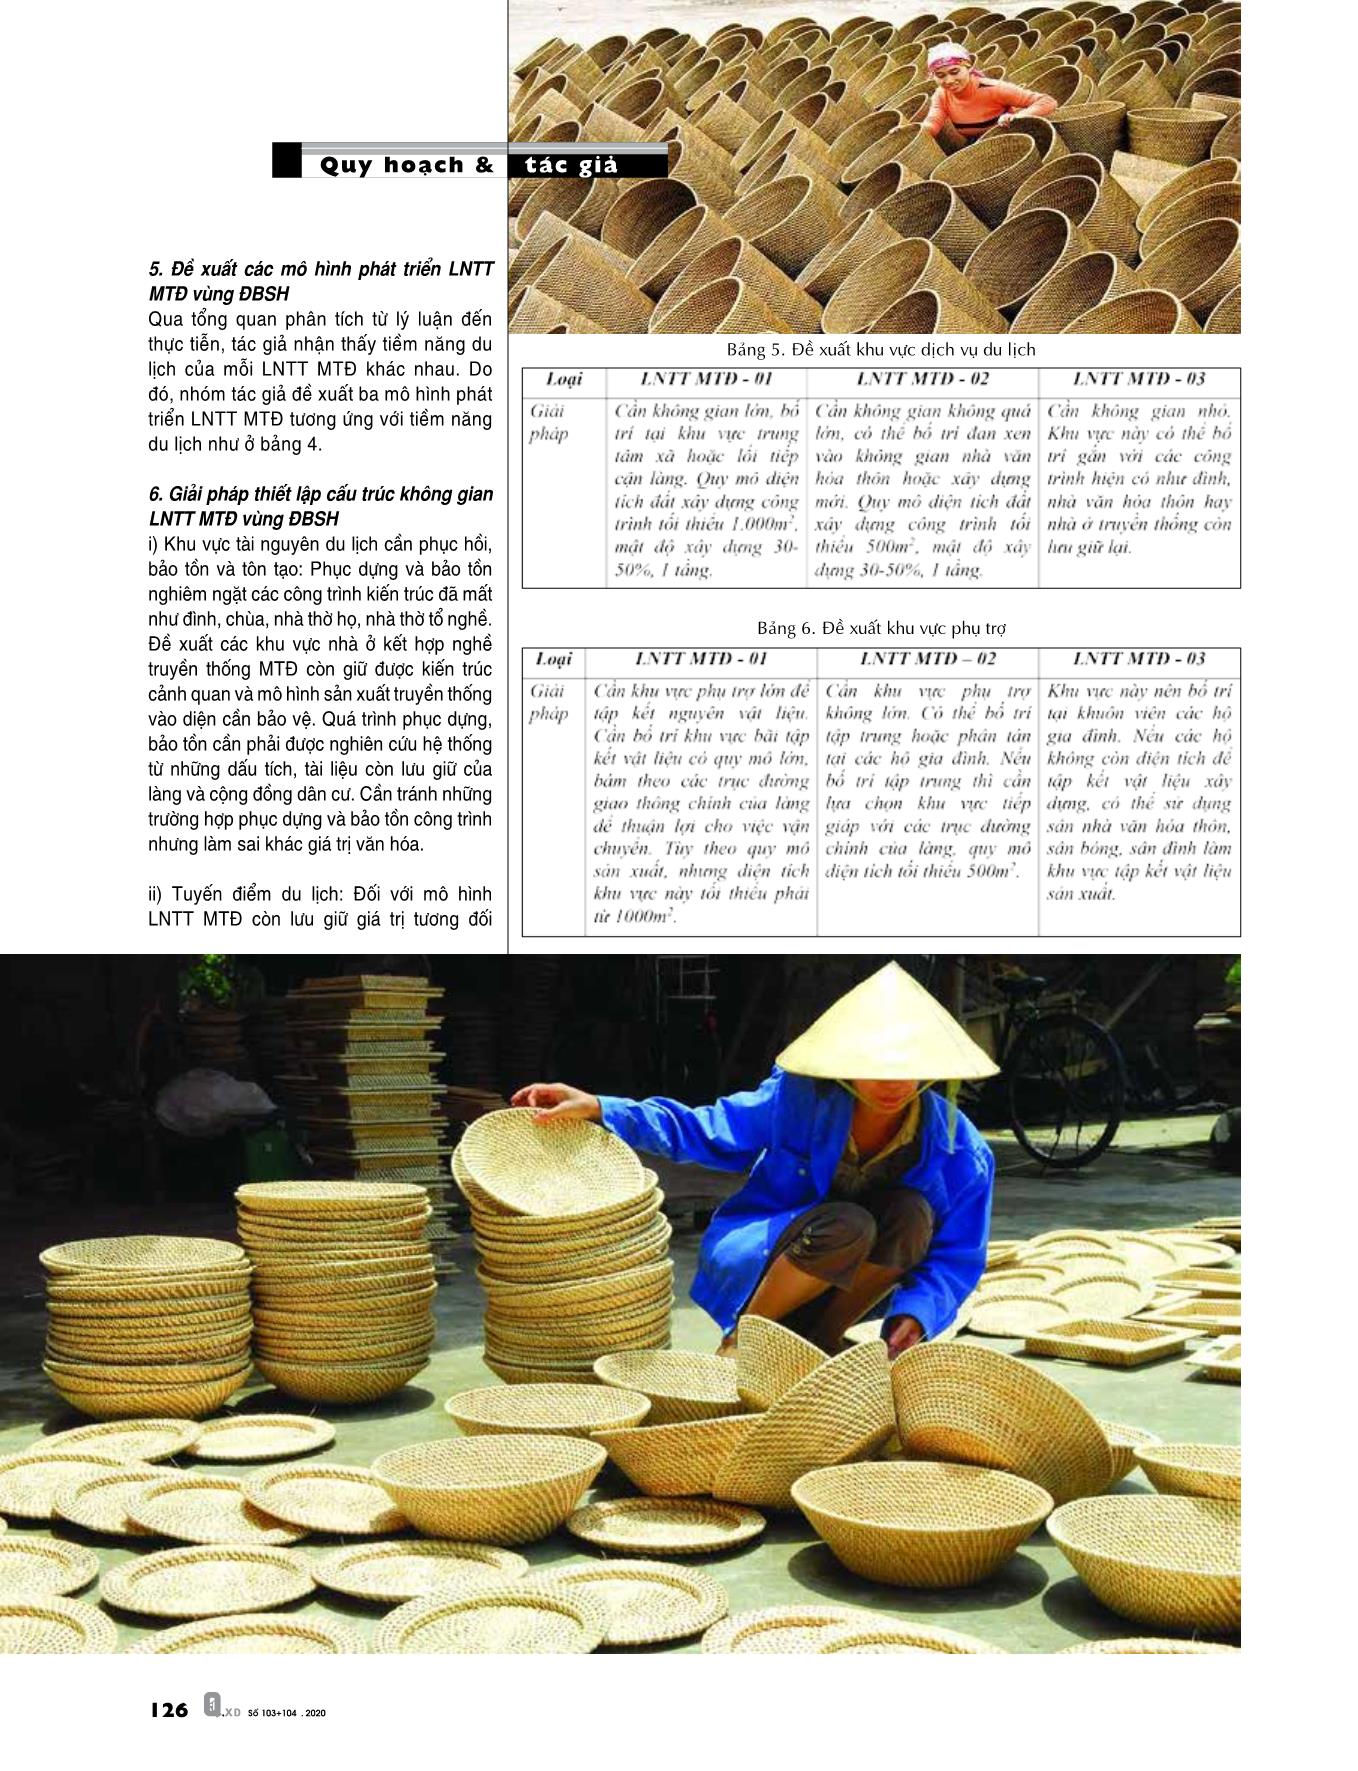 Giải pháp quy hoạch làng nghề truyền thống mây tre đan vùng Đồng bằng sông Hồng trang 5